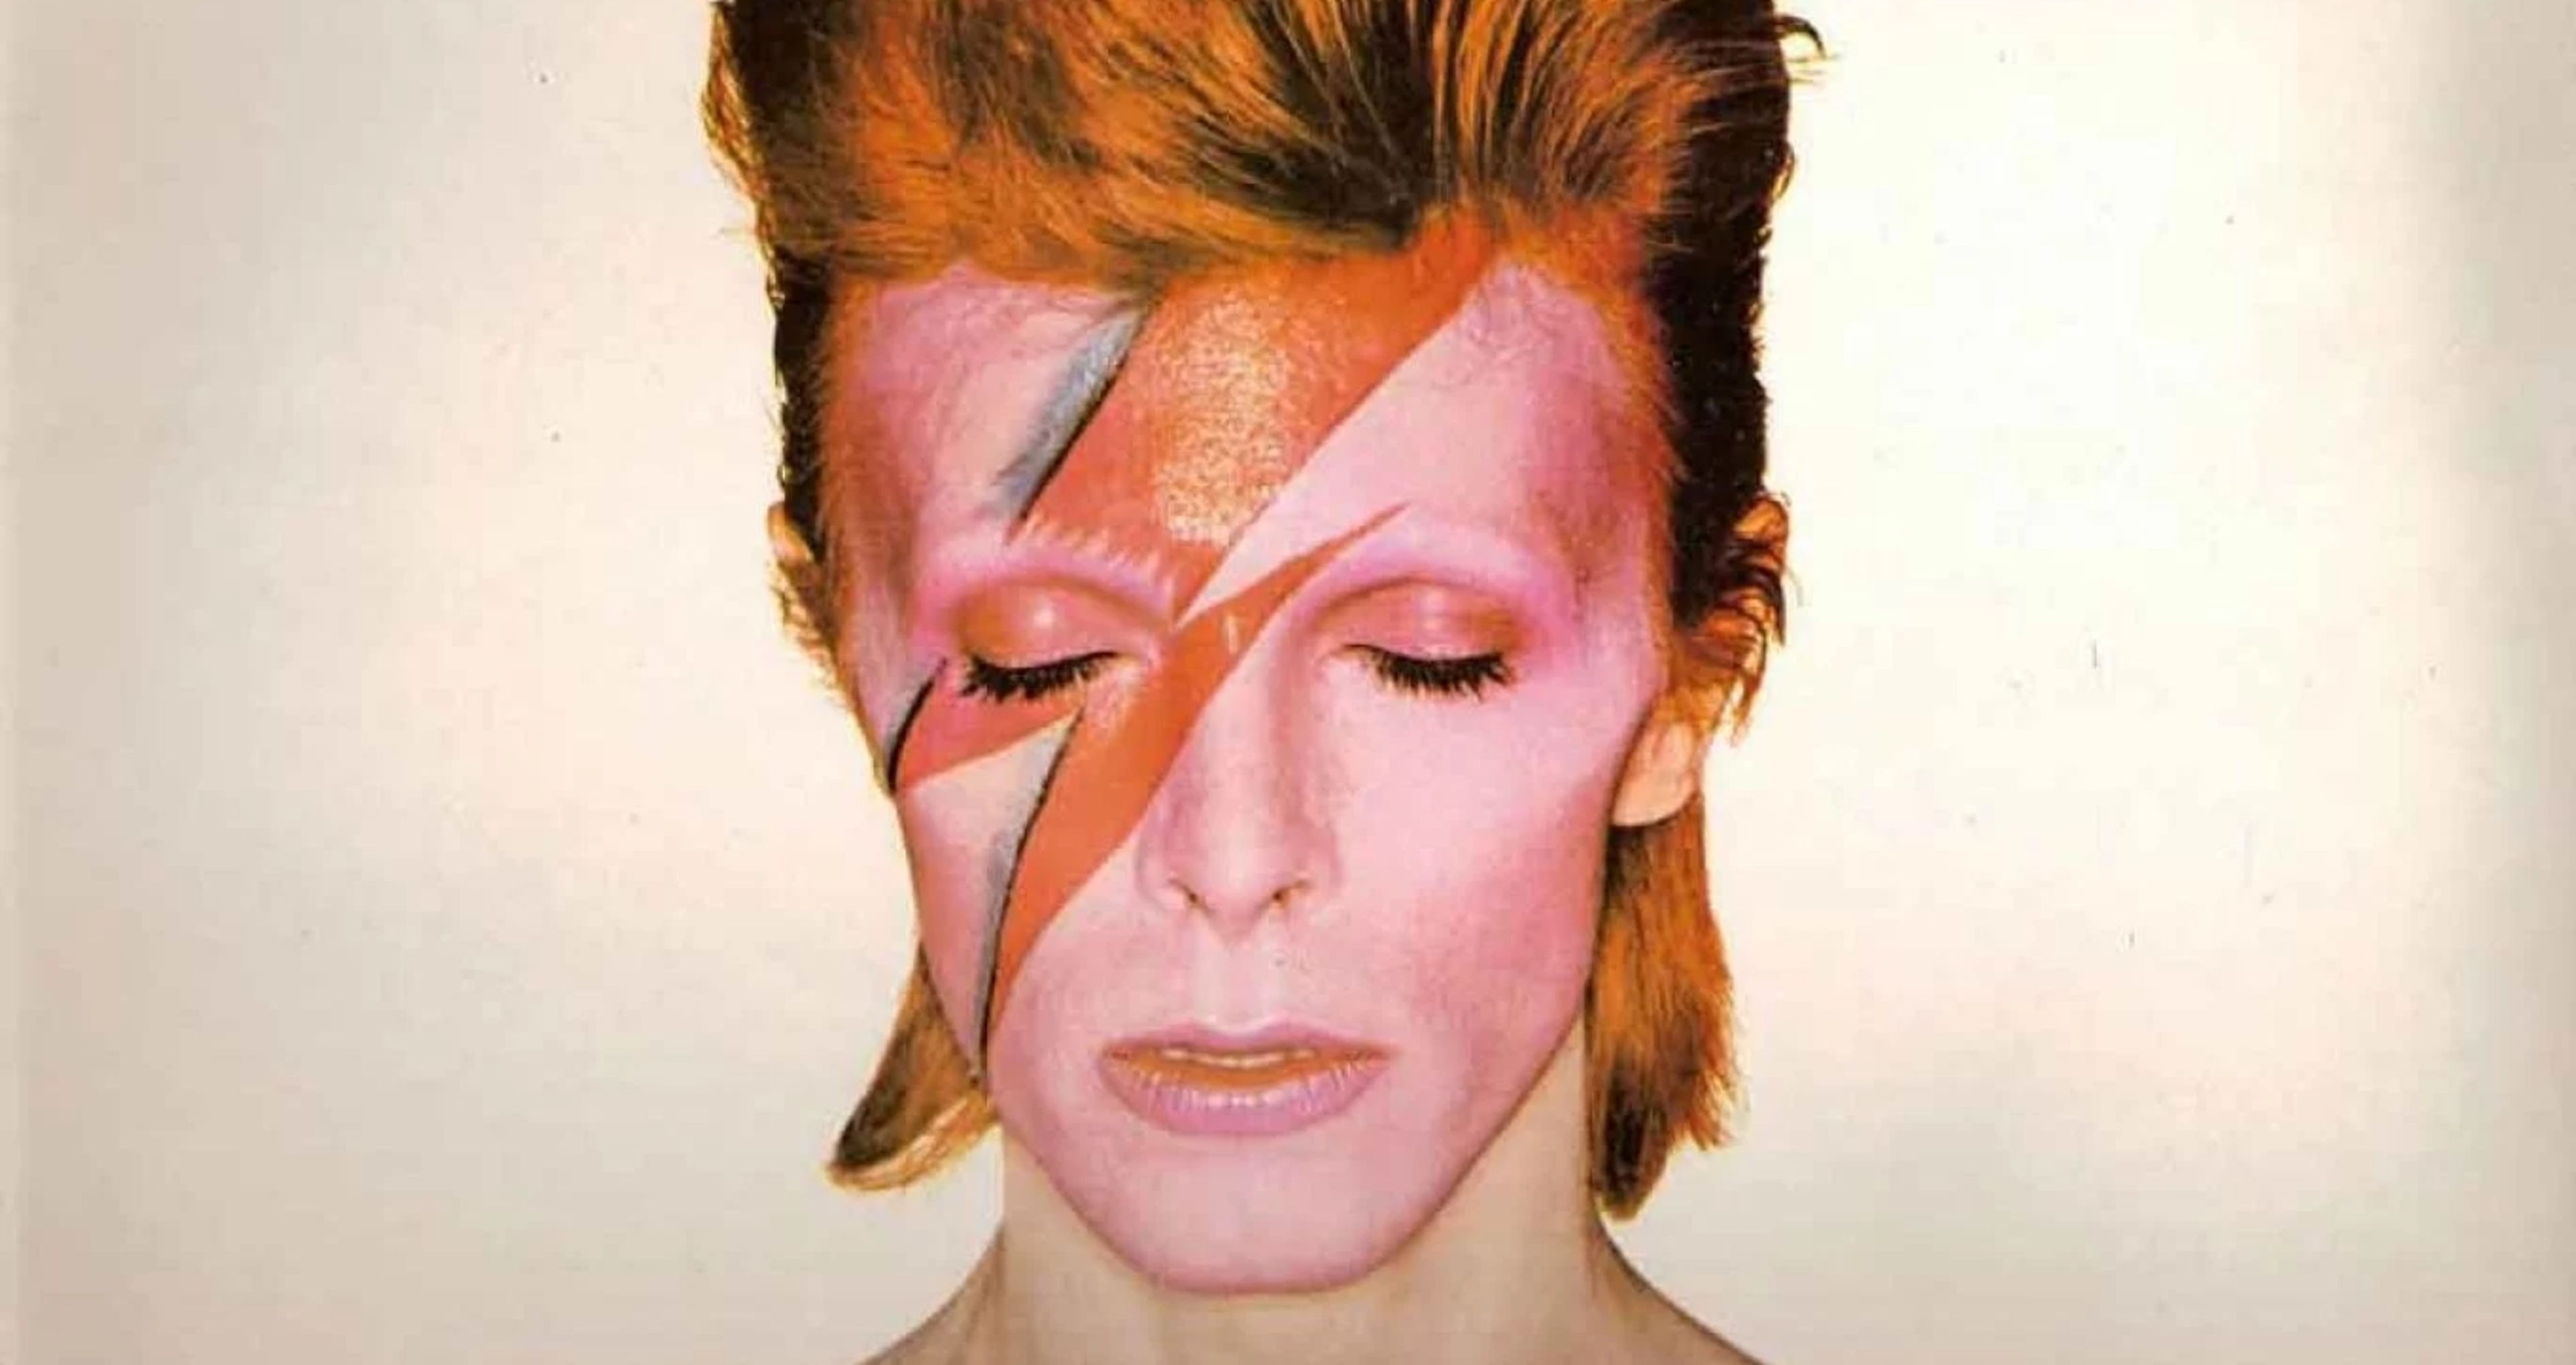 David Bowie Ziggy Stardust